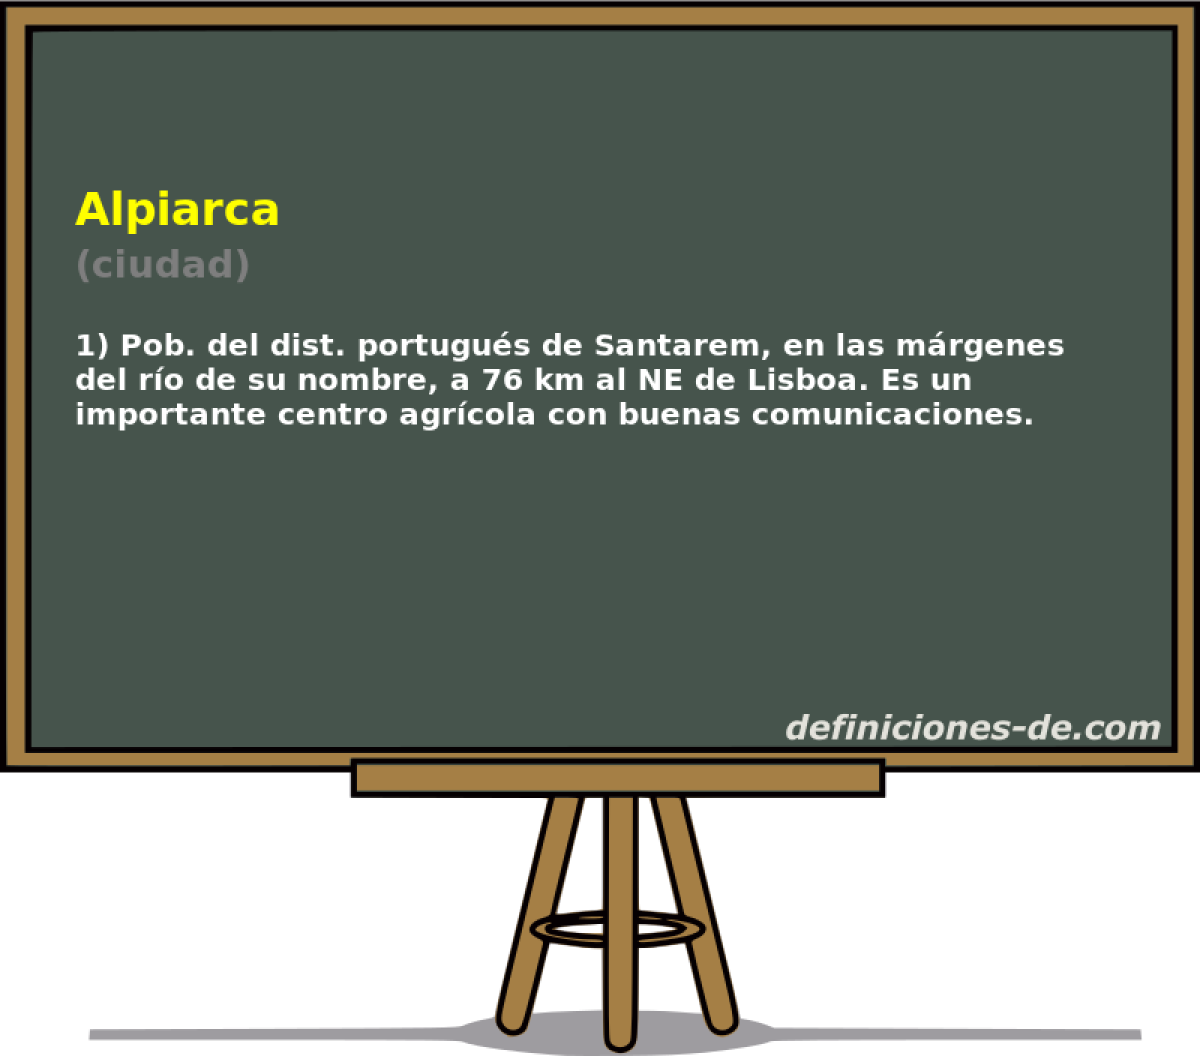 Alpiarca (ciudad)